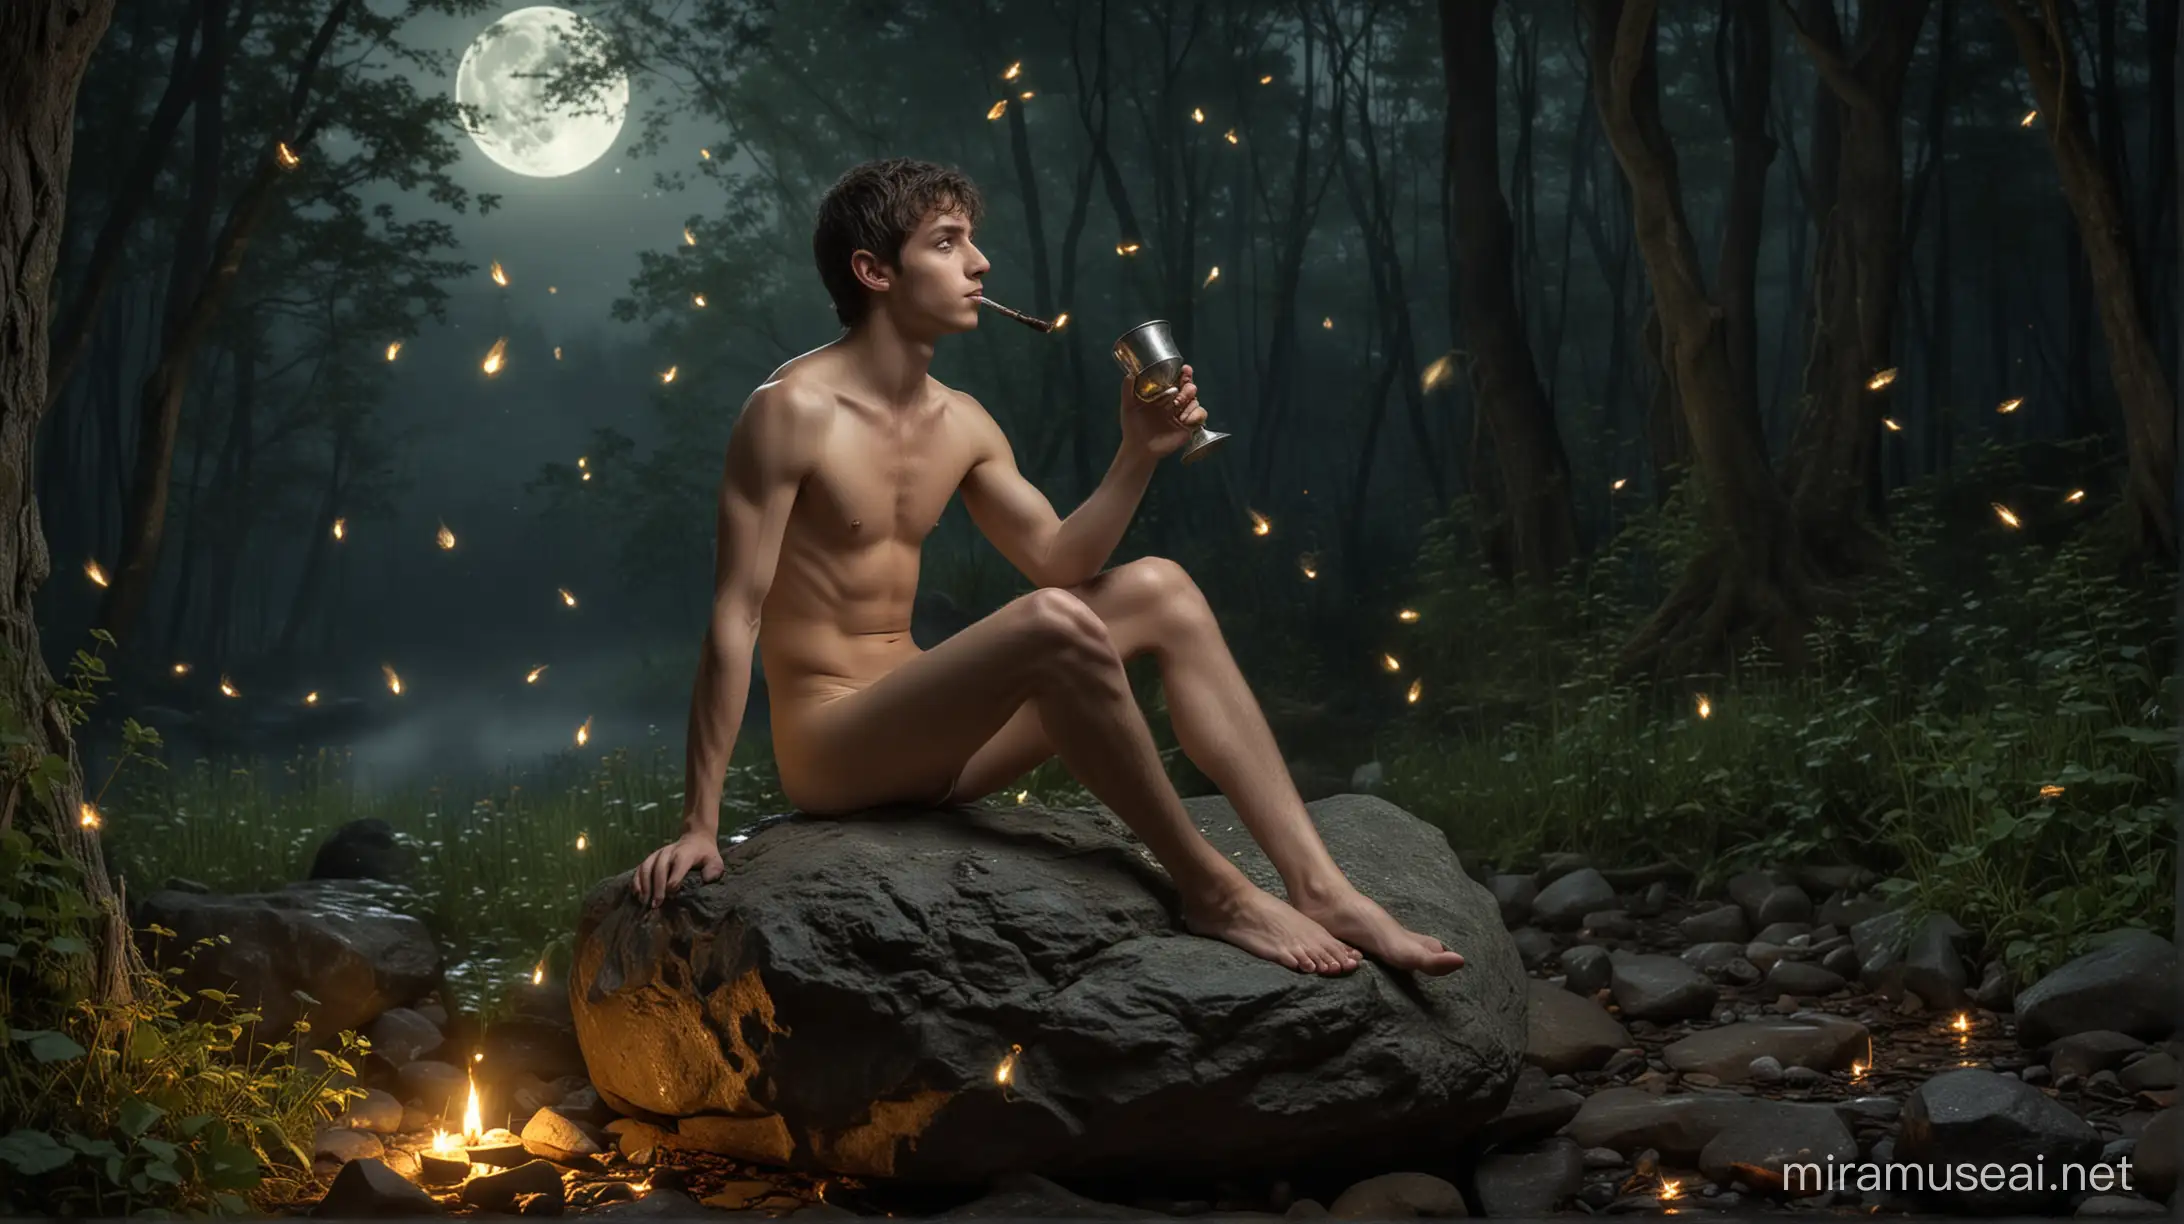 Duende masculino de 18 anos sentado em uma pedra, com uma taça na mão, completamente nu e descalço, sob a luz da lua, em uma floresta encantada, cercado de elfos tocando flautas. Vagalumes, cogumelos e fadas ao redor.